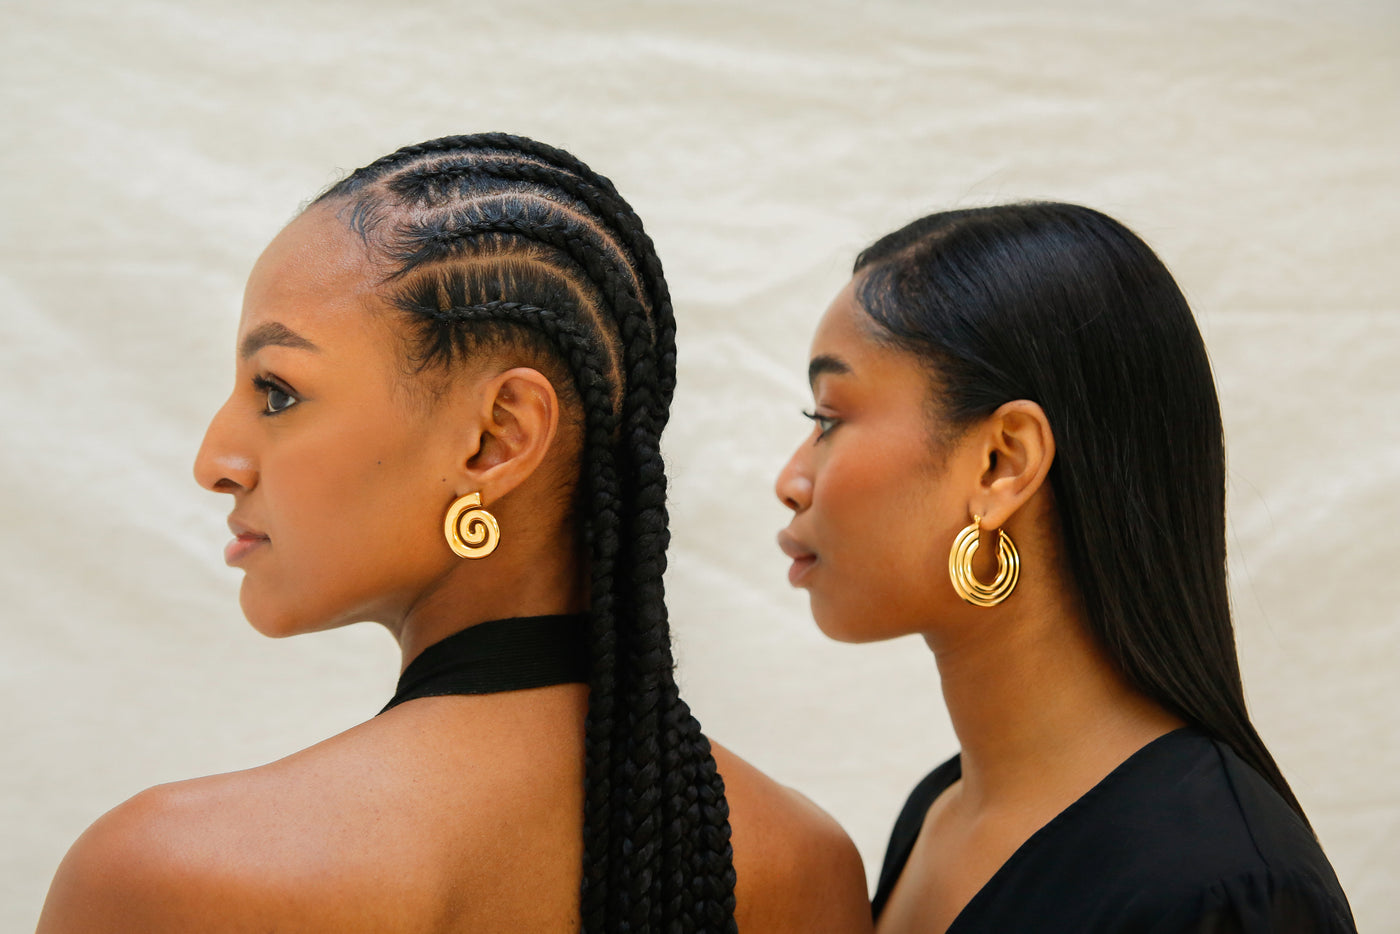 Ayele models wearing the fine jewelry earrings